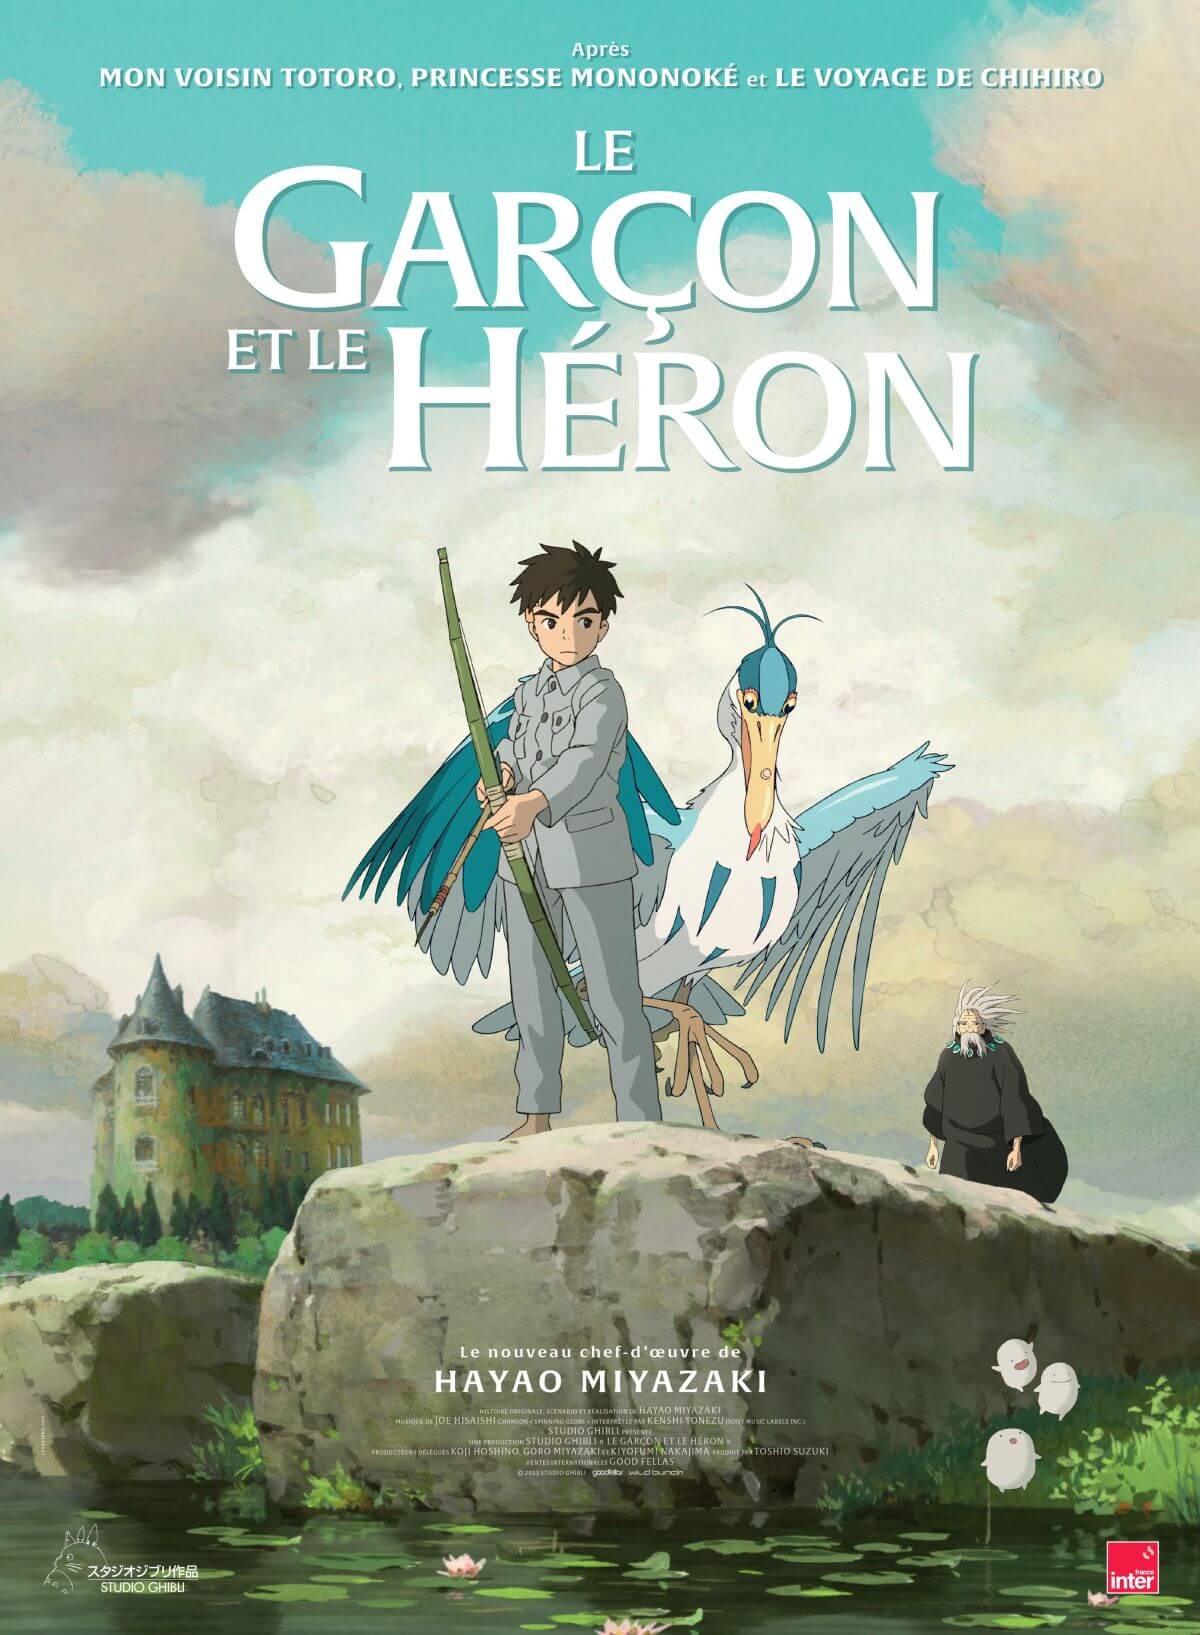 Une nouvelle affiche pour le Garçon et le Héron, le nouveau Ghibli